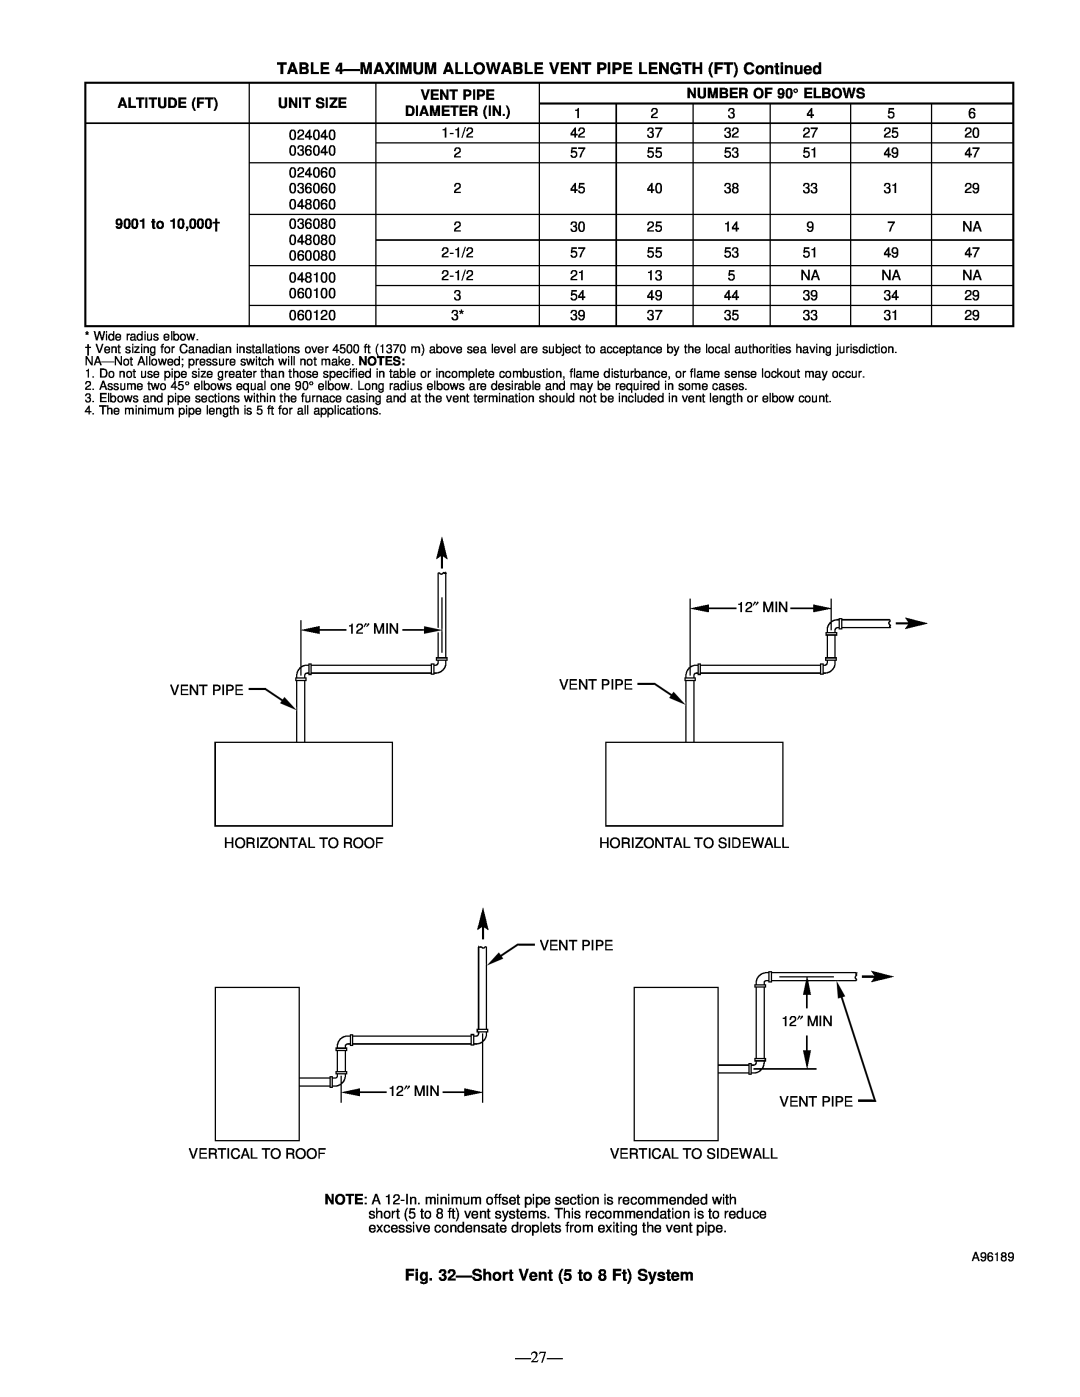 Bryant 345MAV instruction manual ÐShort Vent 5 to 8 Ft System, Ð27Ð 